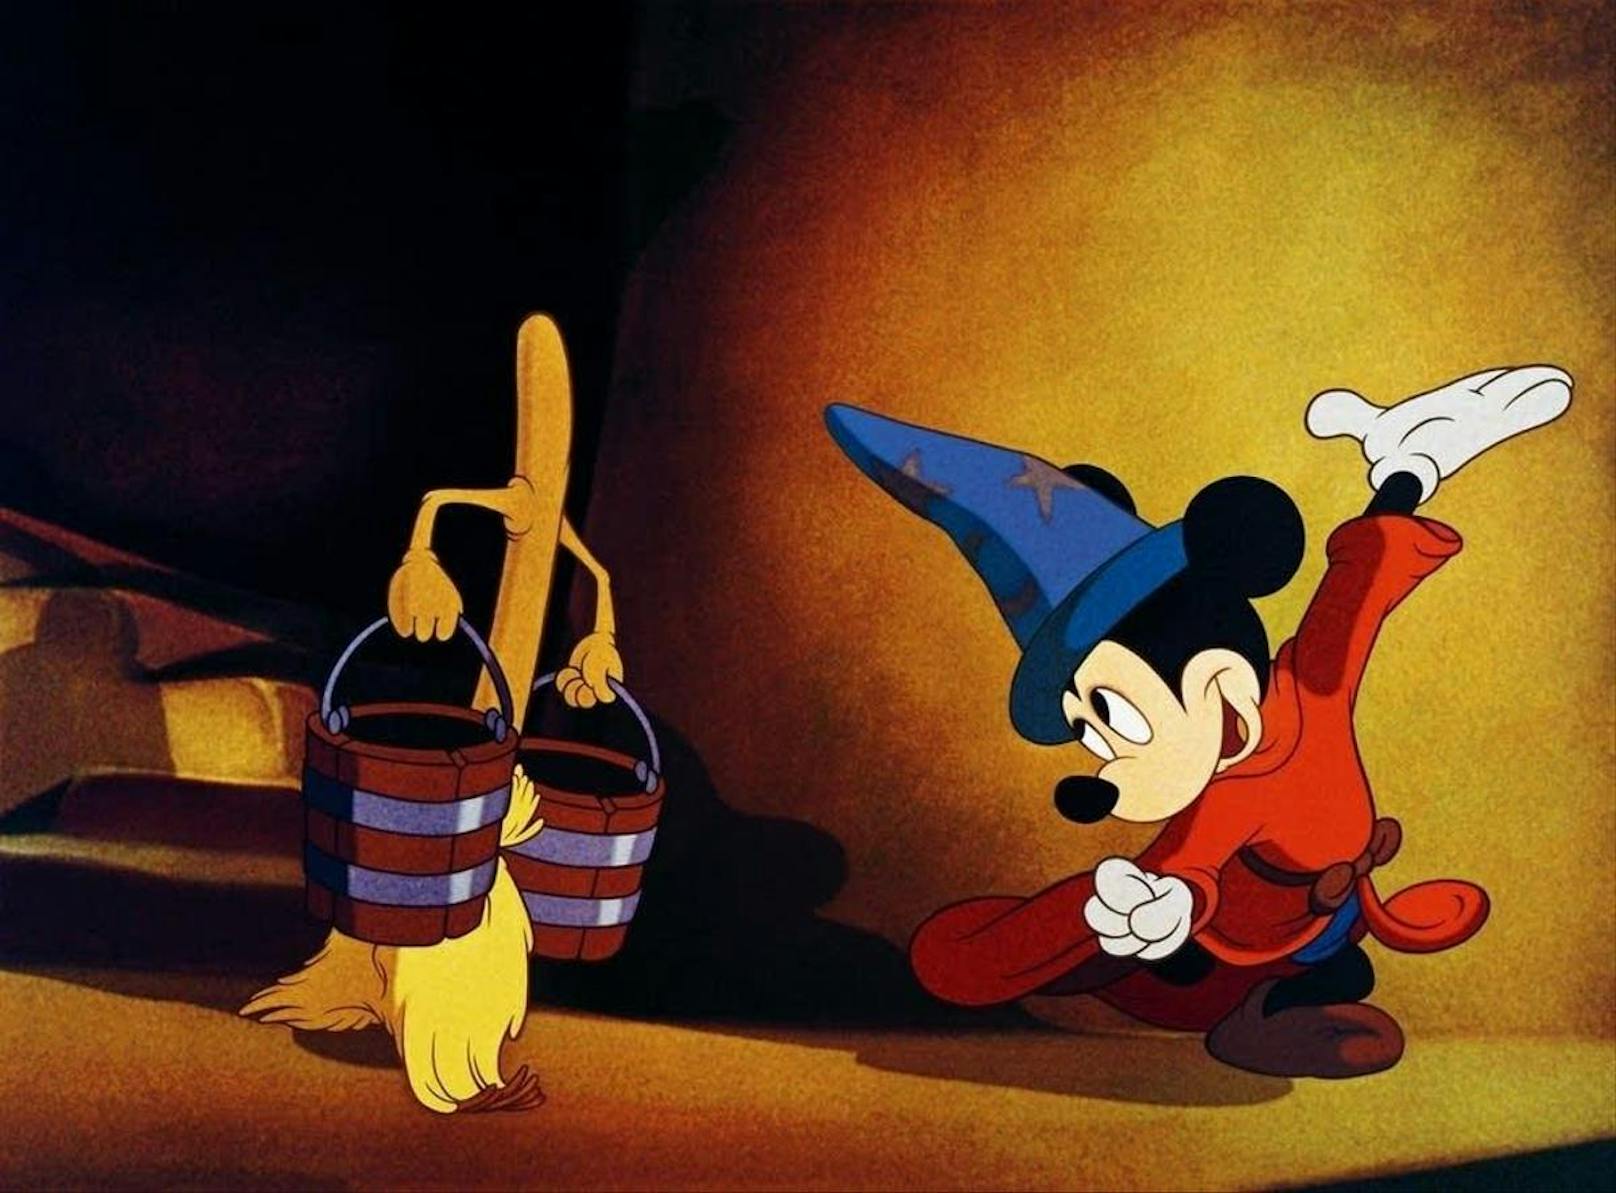 Ebenso wie der Micky-Mouse-Klassiker "Fantasia" (1940). Der Film gilt bereits seit den 1960ern als problematisch: Mehrfach wurden in den letzten Jahrzehnten Szenen herausgeschnitten, bevor der Film neu veröffentlicht wurde.